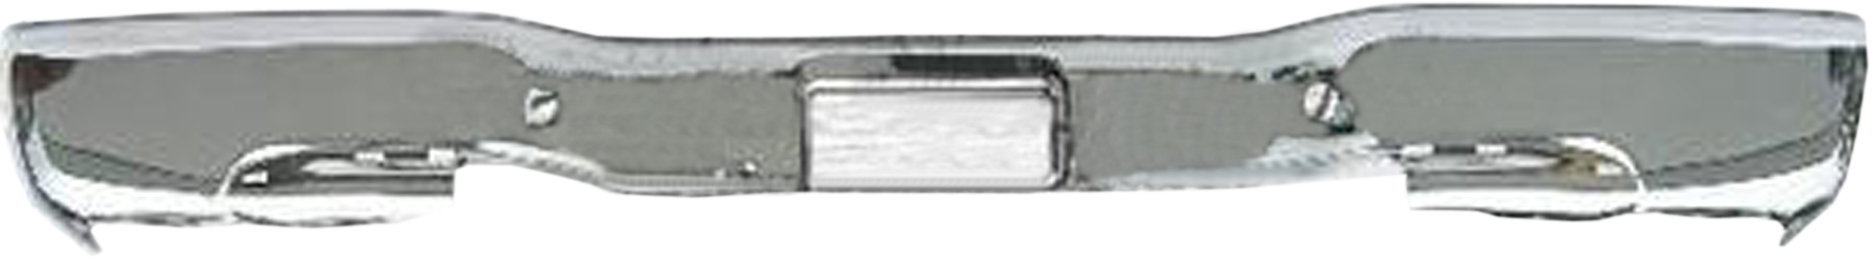 Aftermarket METAL REAR BUMPERS for CHEVROLET - SILVERADO 3500, SILVERADO 3500,01-06,Rear bumper face bar